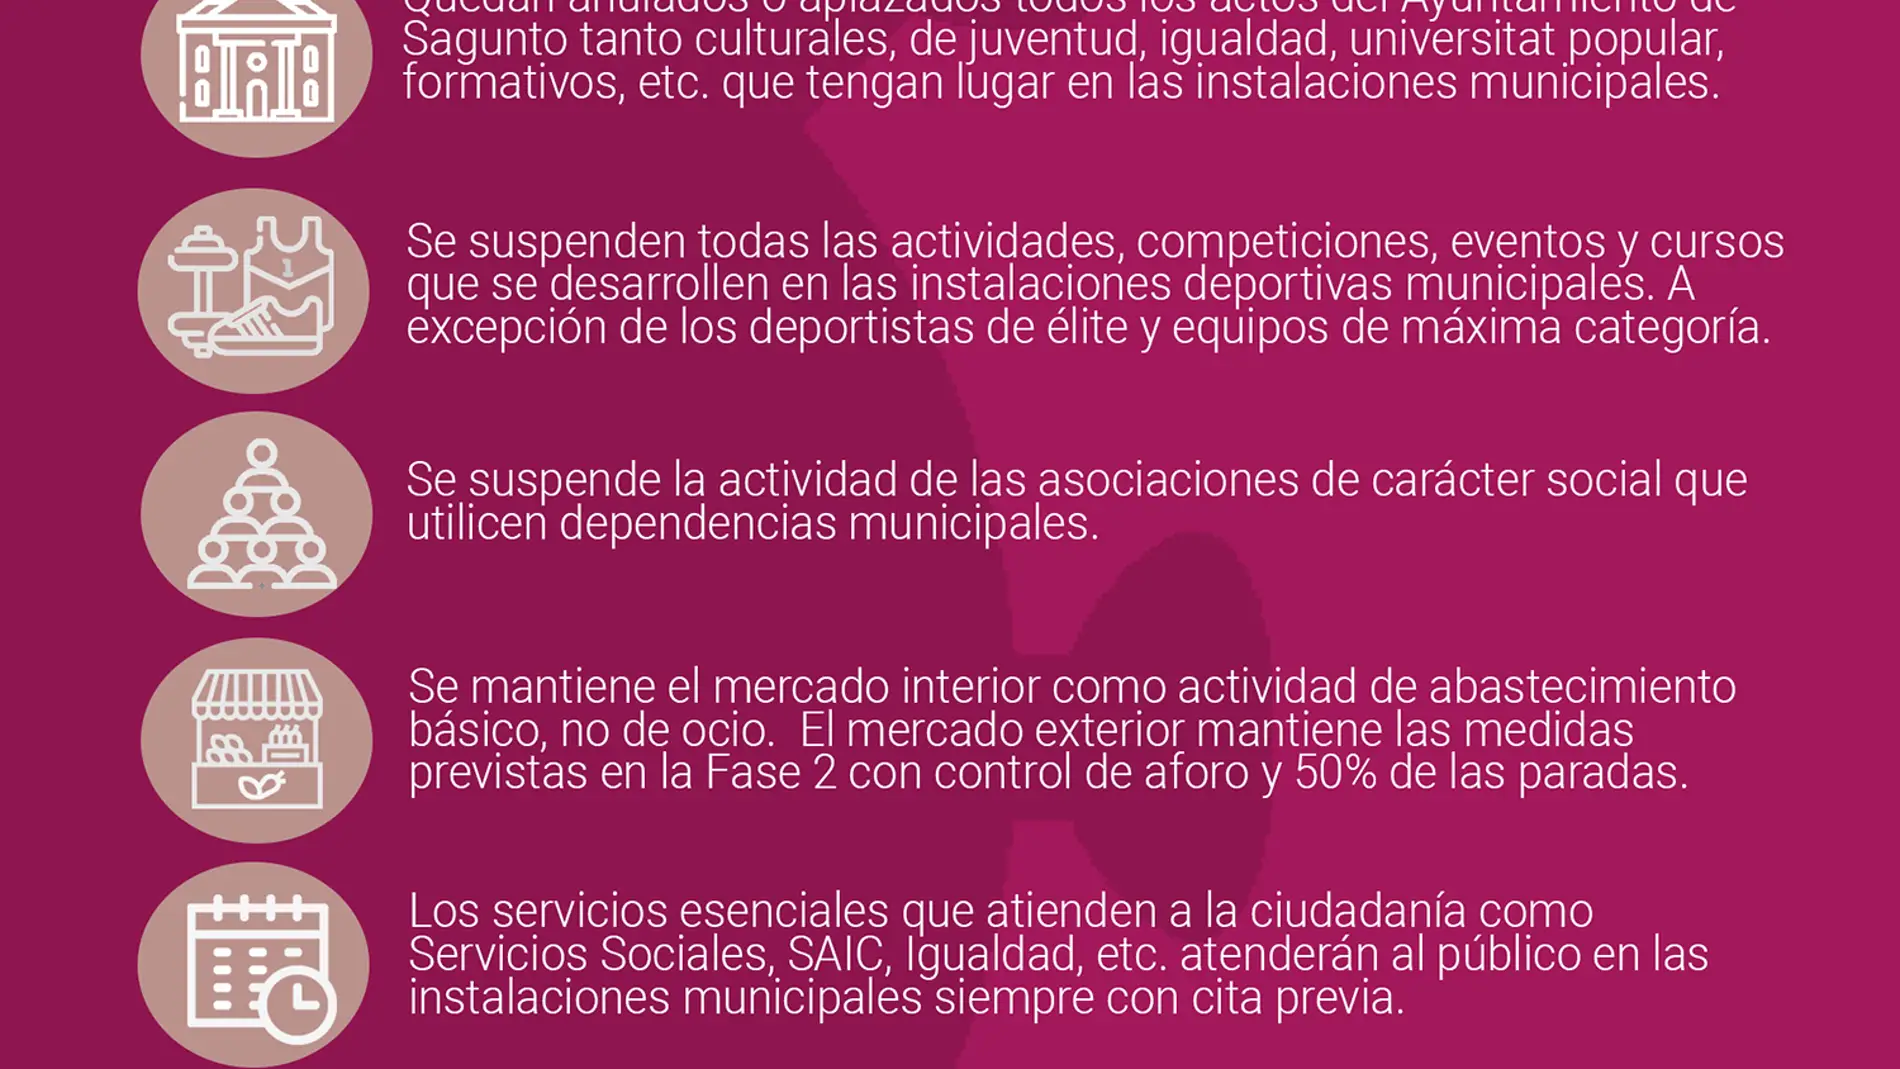 El Ayuntamiento de Sagunto suspende las actividades culturales, deportivas y sociales en todos los espacios municipales y en la vía pública. 